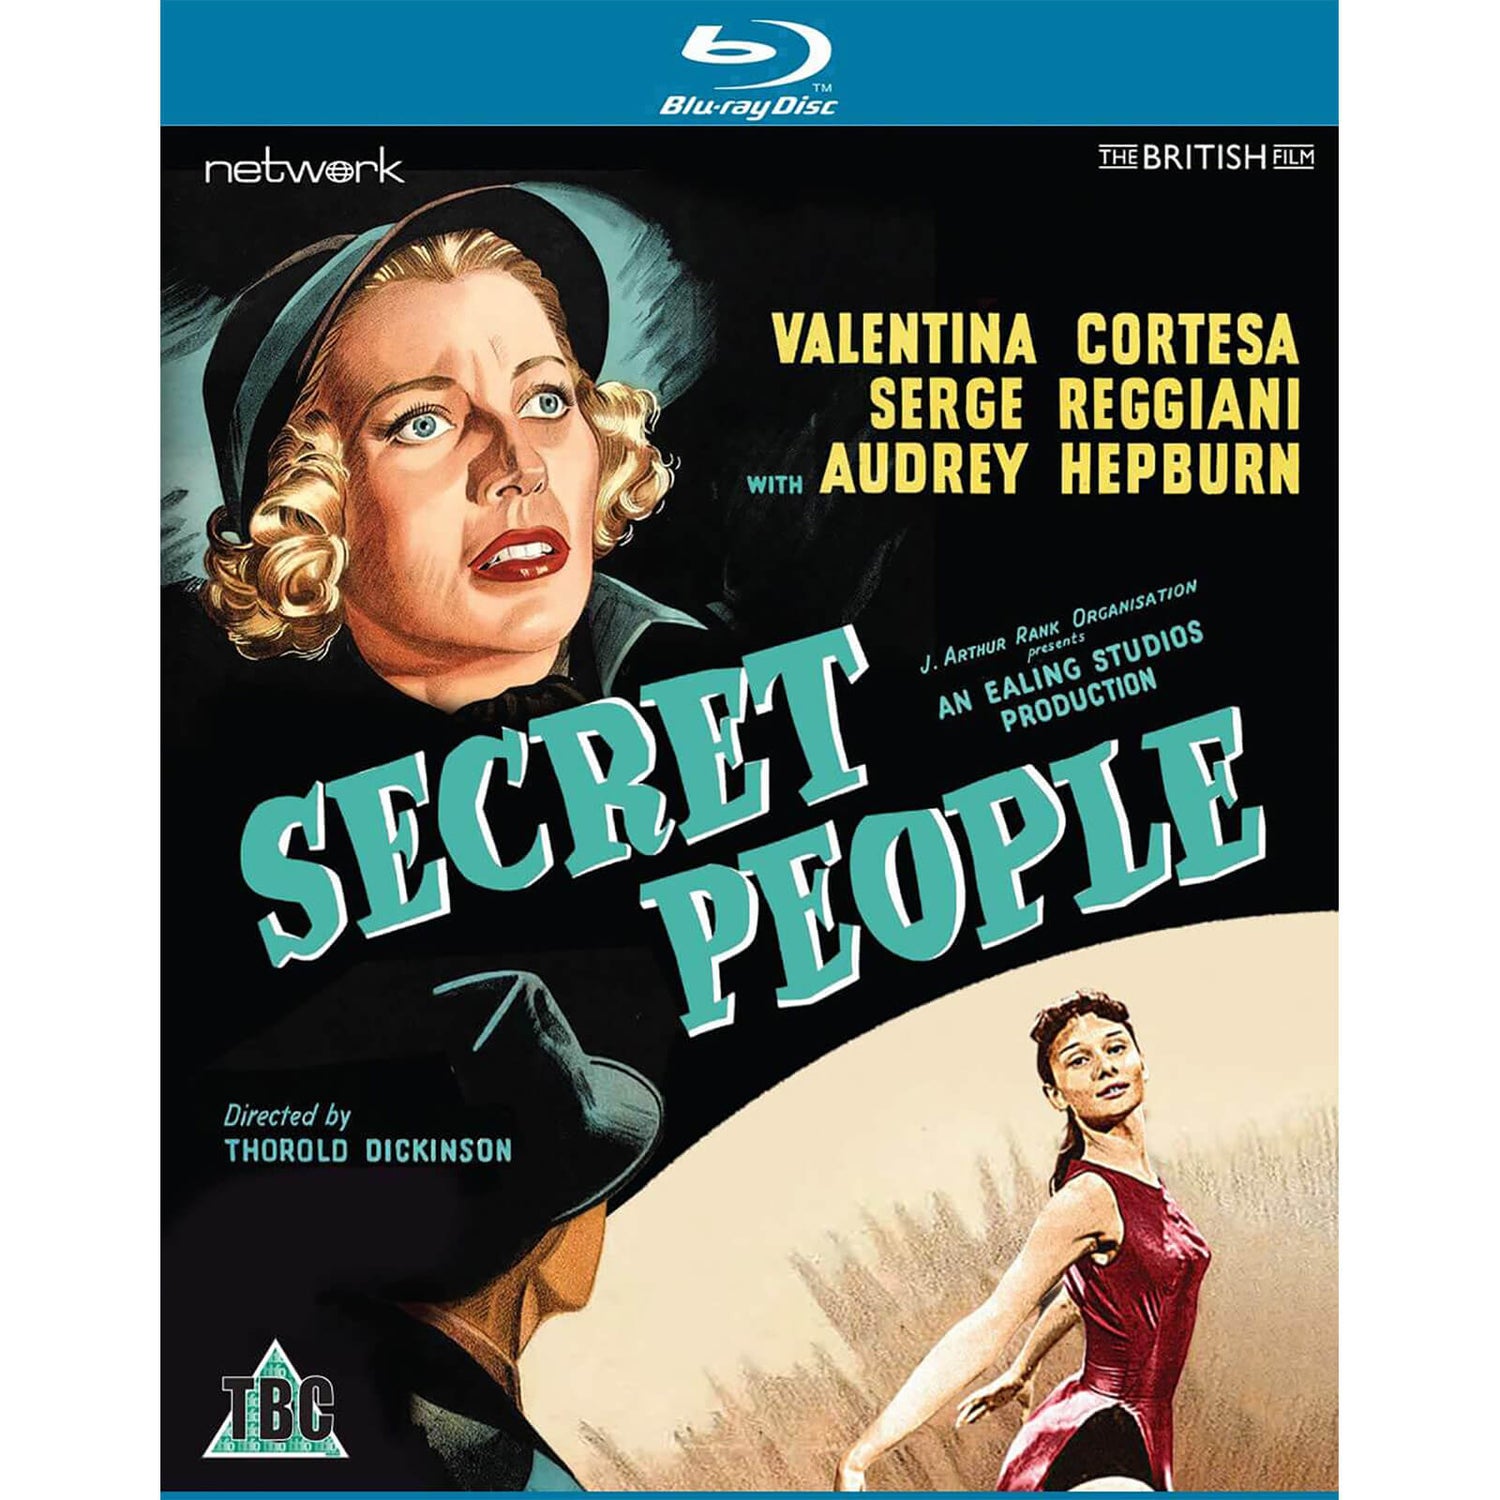 Secret People Blu-Ray